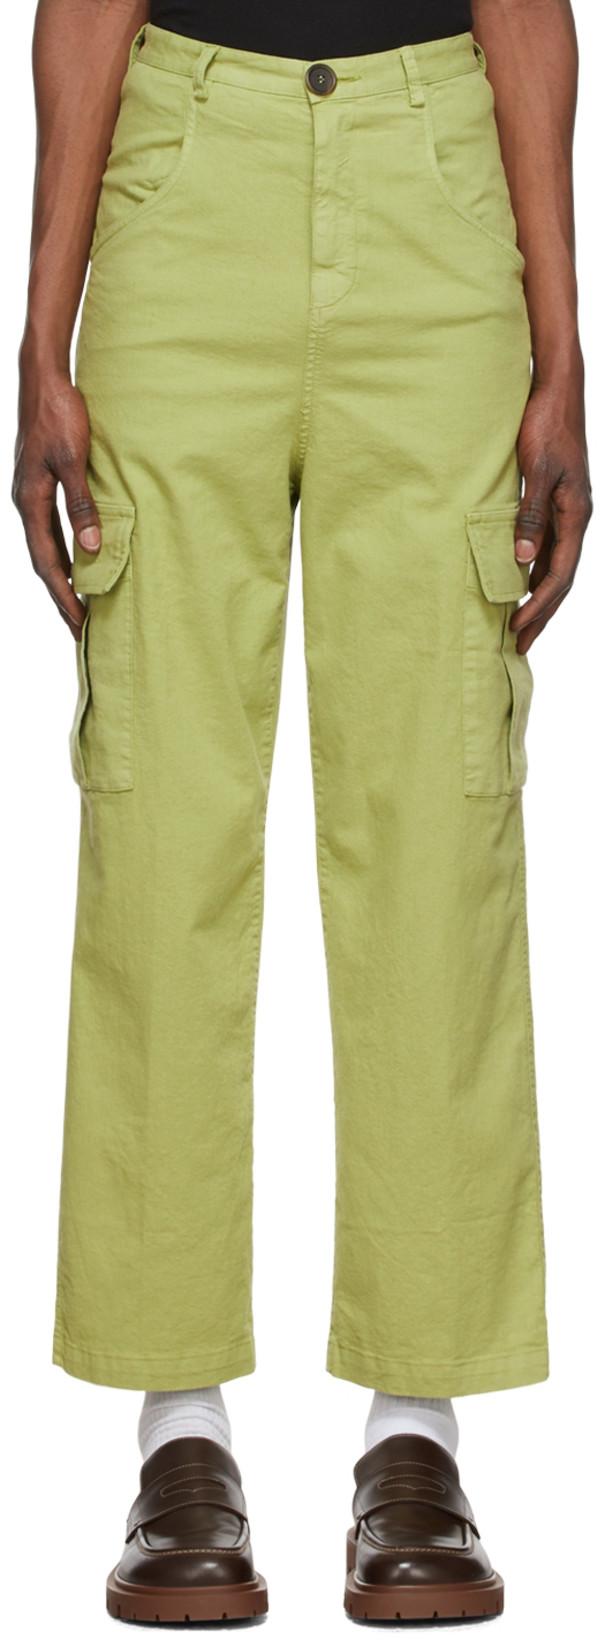 Khaki Cotton Cargo Pants by WINNIE NEW YORK